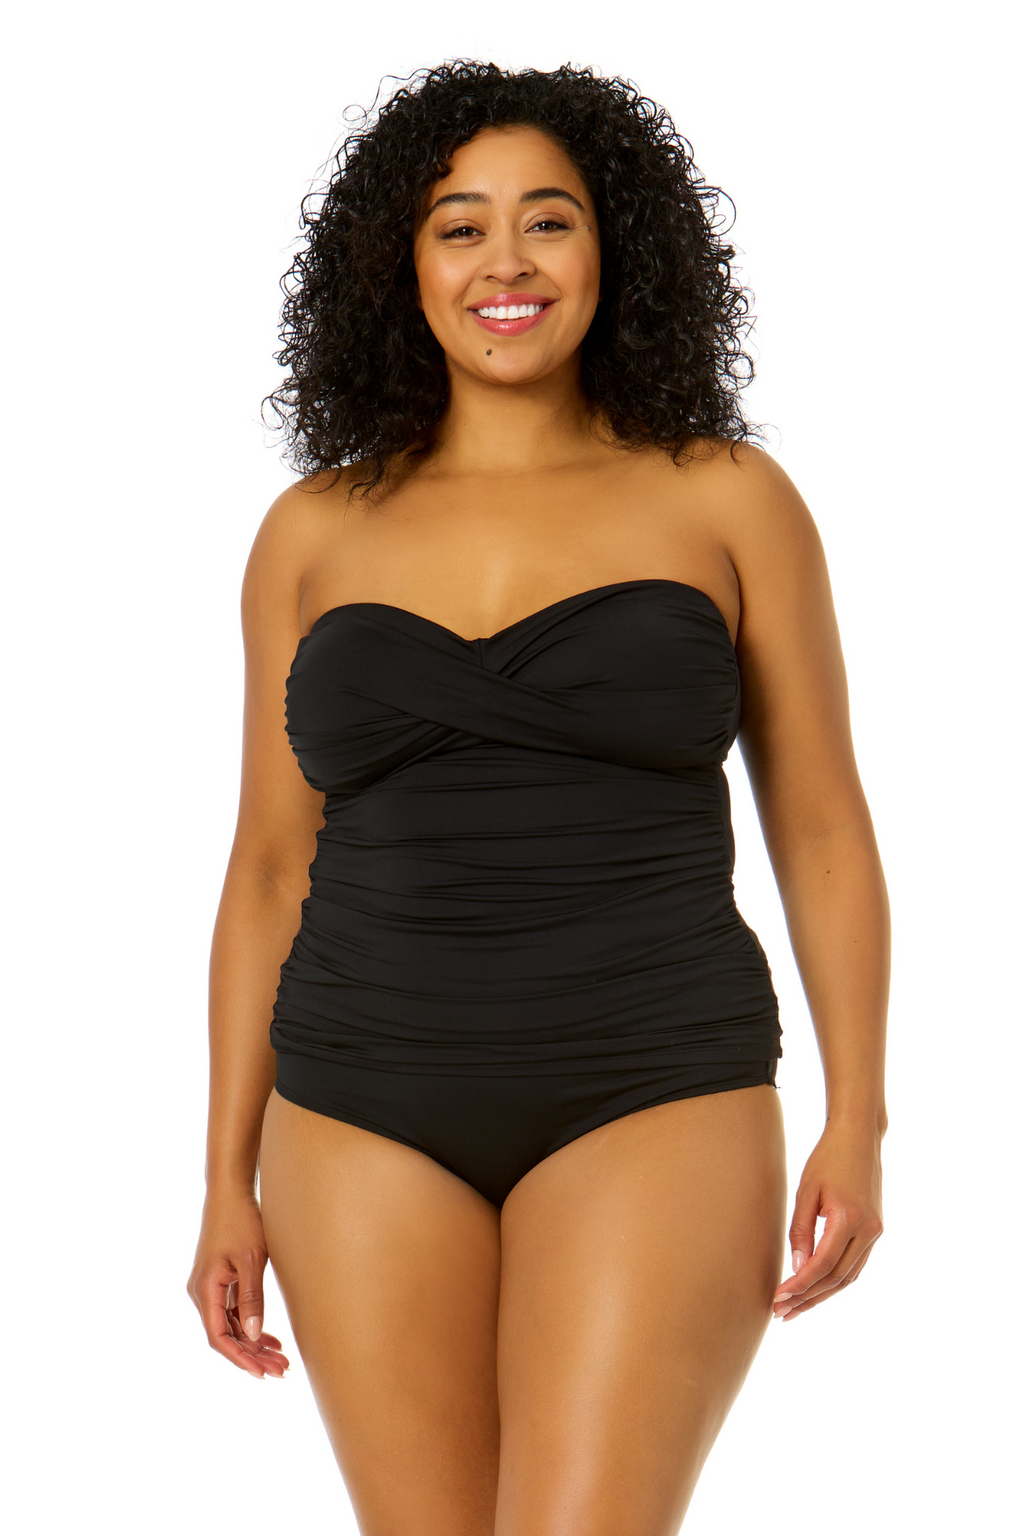 Colloyes Women's Swimwear Twist Bandeau Bikini Top Plus Size